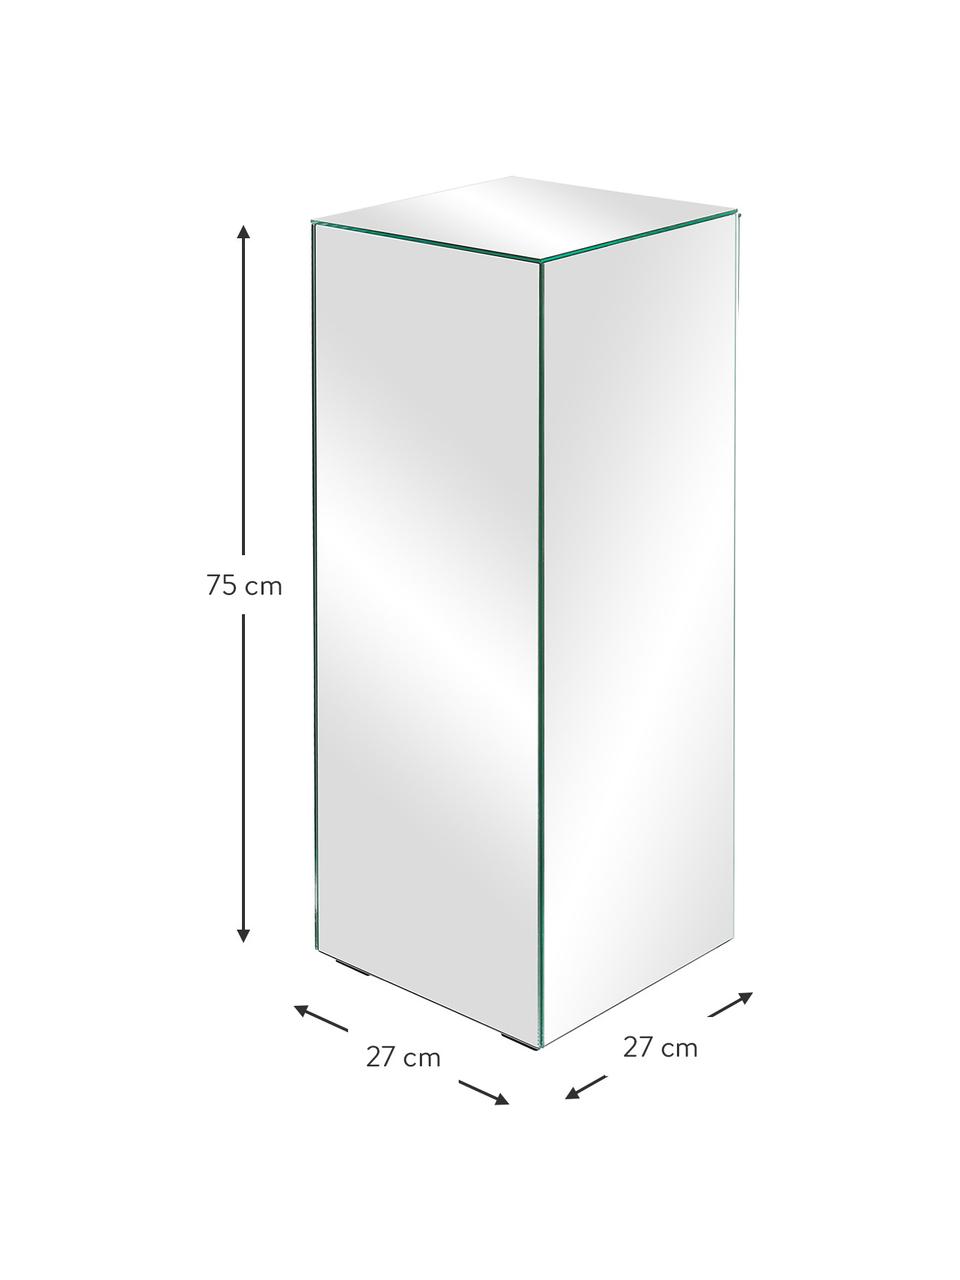 Dekorativní sloup se zrcadlovým efektem Pop, MDF deska (dřevovláknitá deska střední hustoty), zrcadlo, Zrcadlové sklo, Š 27 cm, V 75 cm